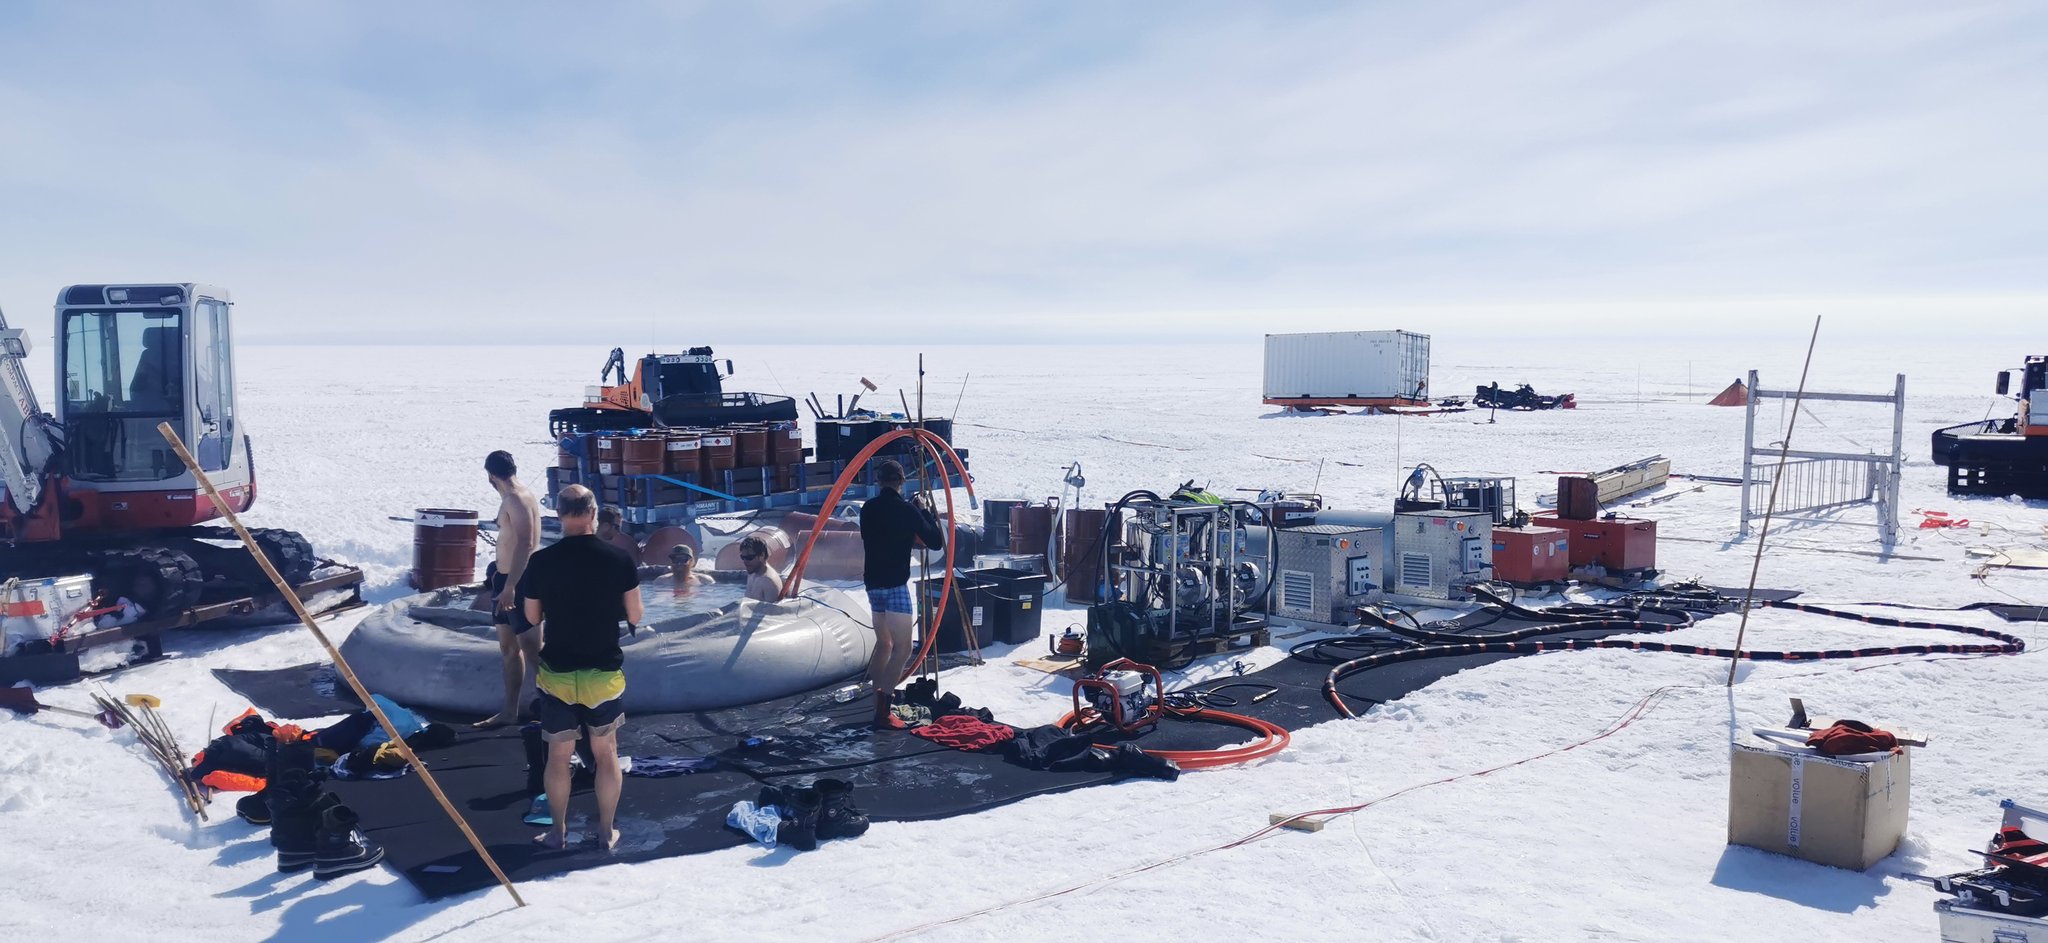 Forskere bader i hjemmelaget badestamp på en forskningsstasjon i Antarktisk